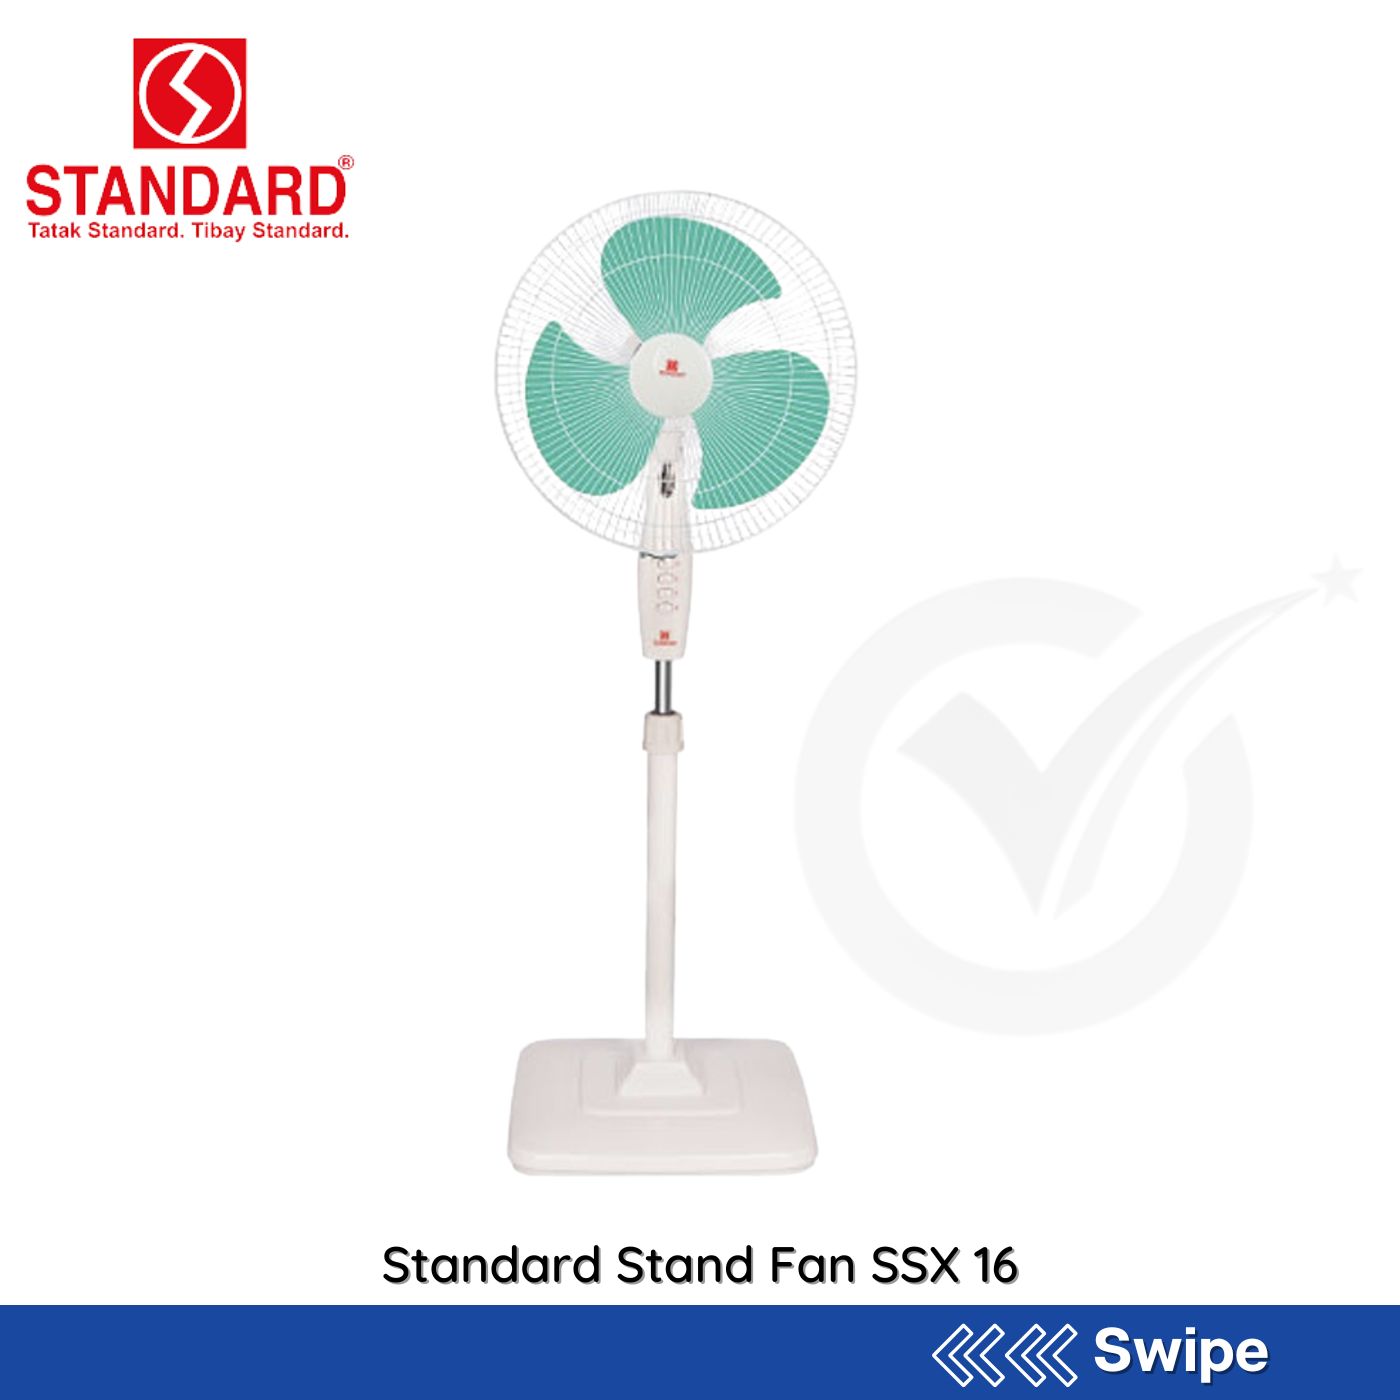 Standard Stand Fan SSX 16